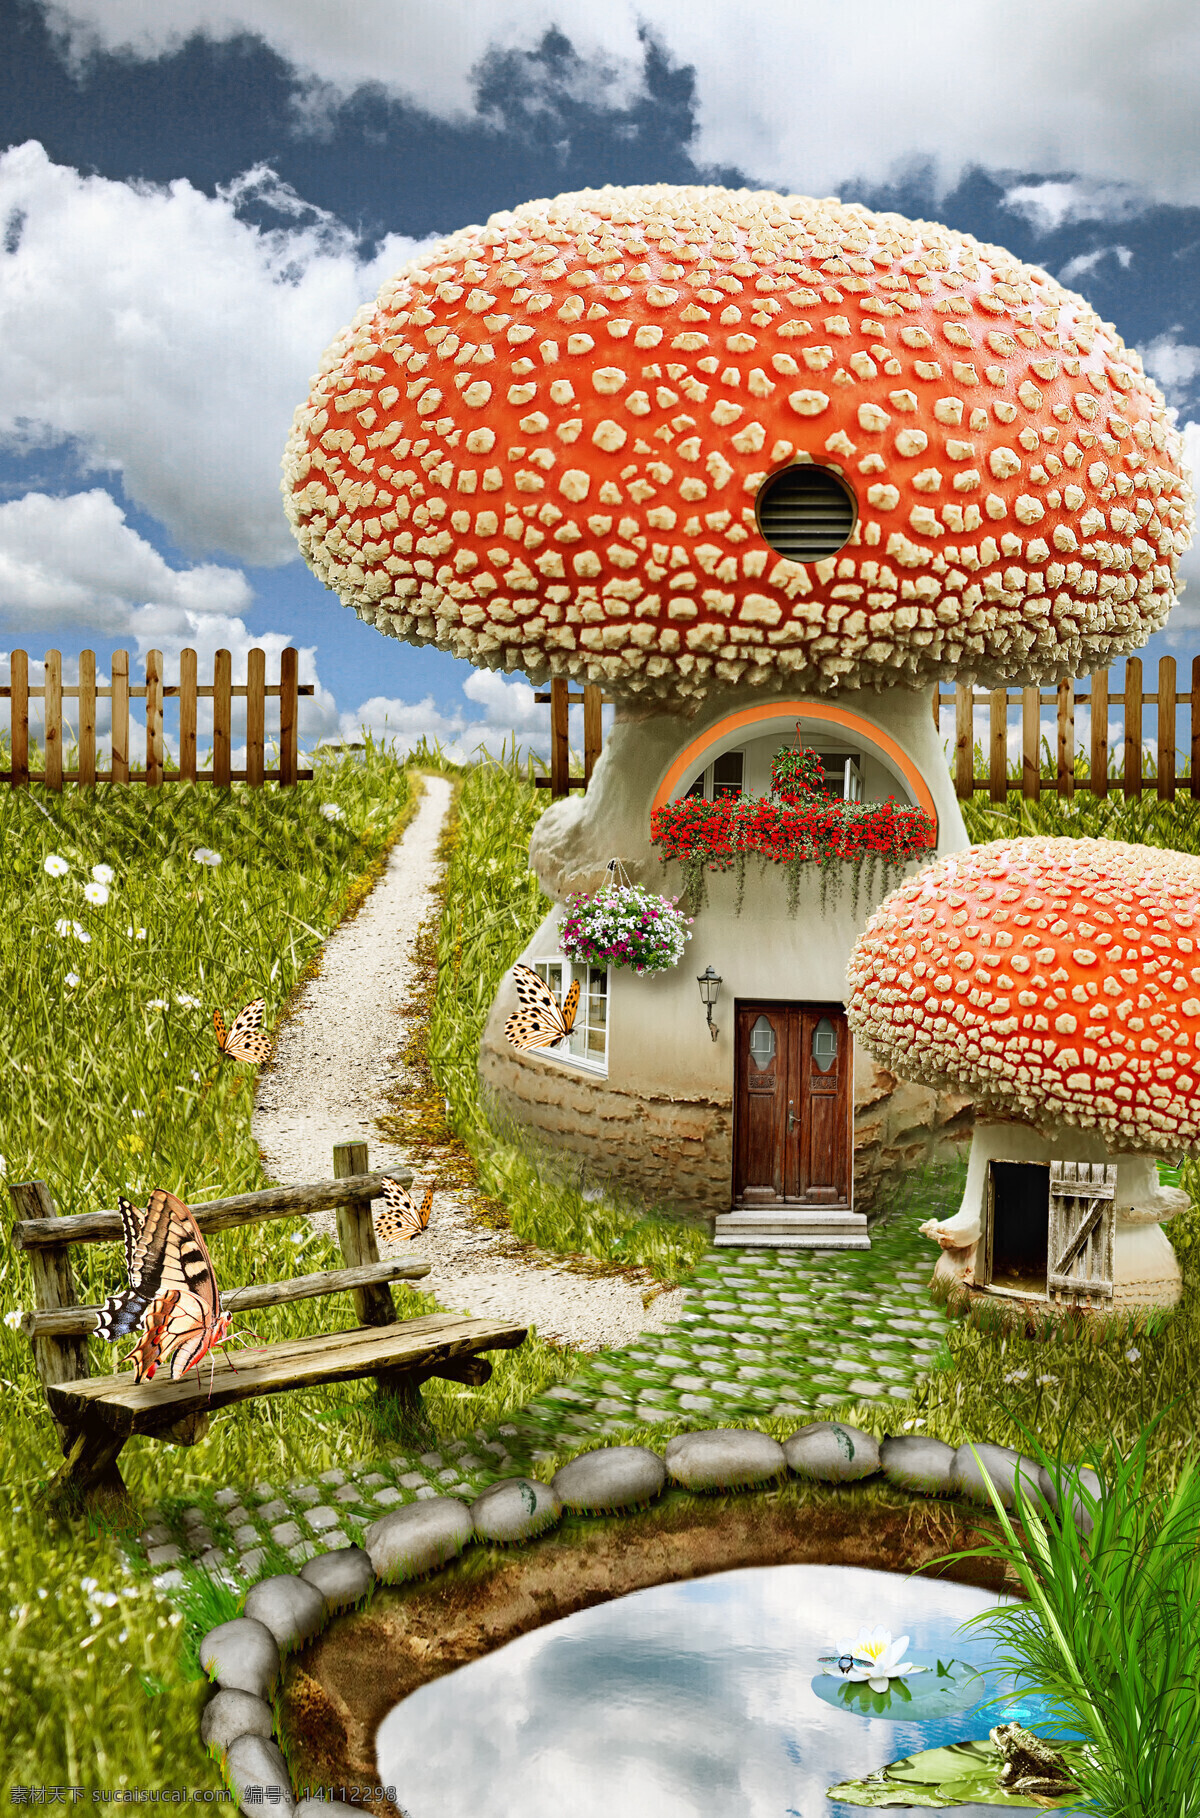 美丽 蘑菇 童话 小屋 童话小屋 蘑菇屋 蝴蝶 童话主题 水池 木椅 其他类别 生活百科 黄色